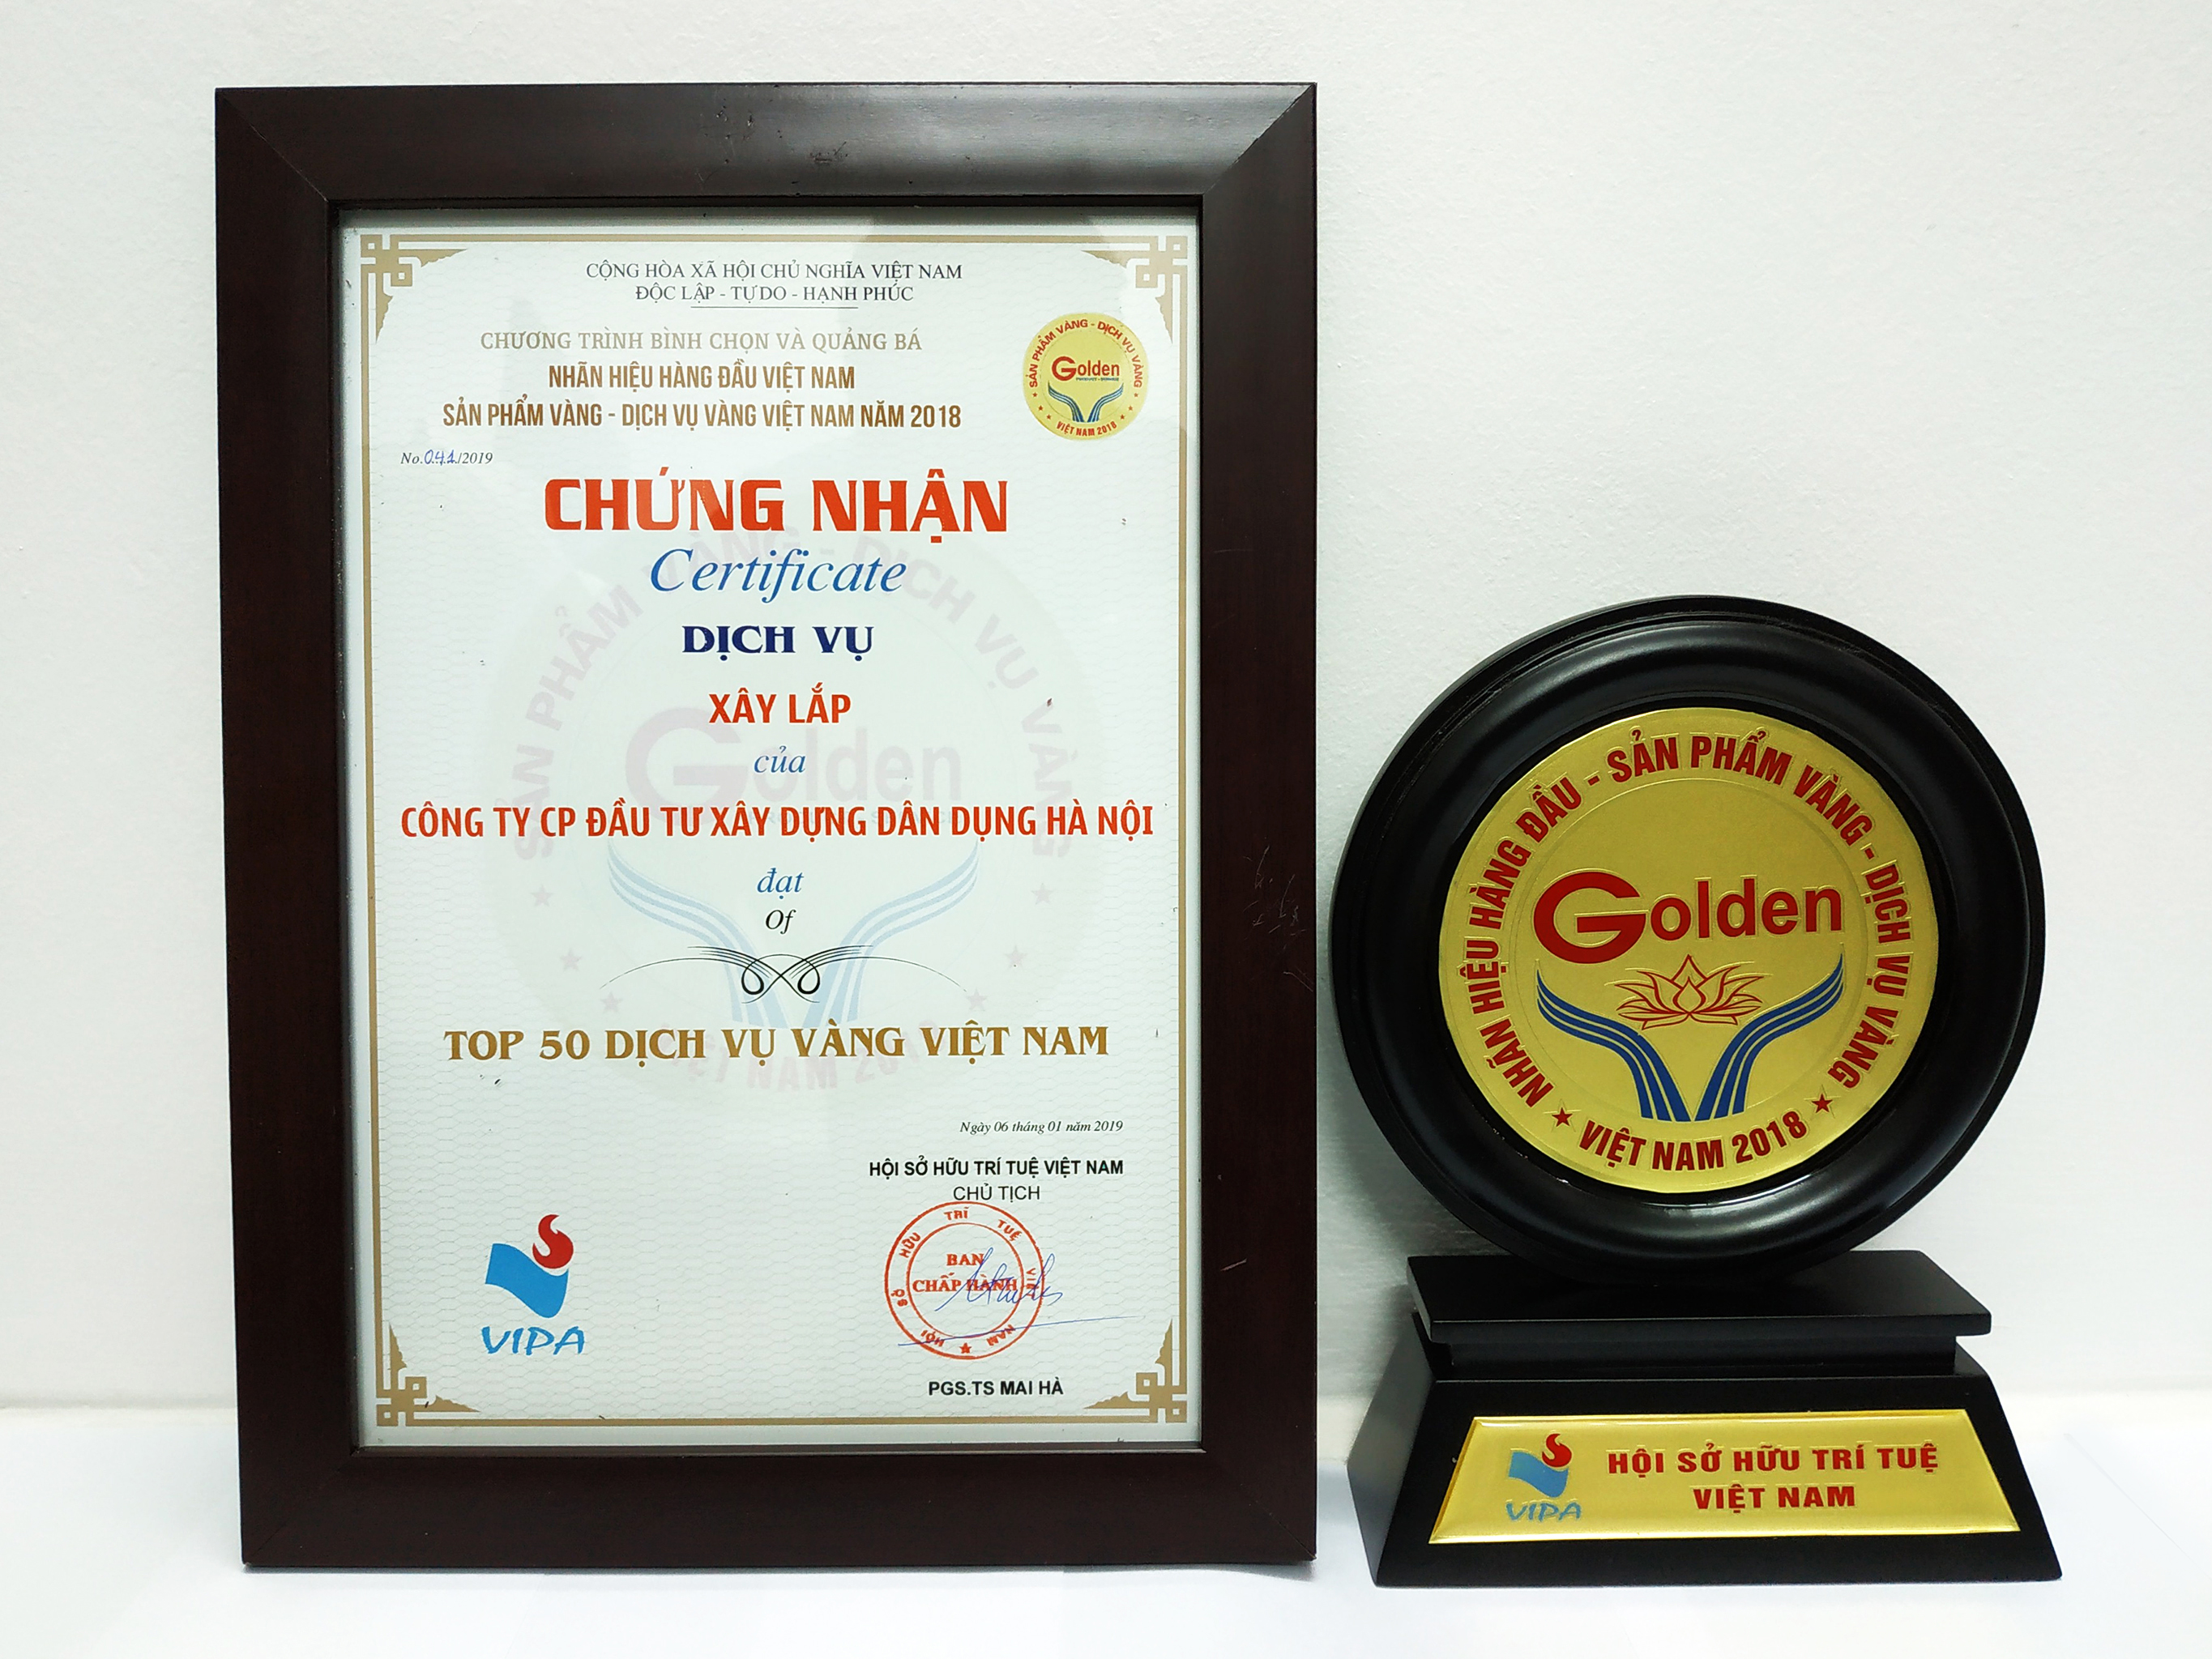 Nhãn hiệu hàng đầu Việt Nam - Sản phẩm vàng, Dịch vụ vàng Việt Nam năm 2018